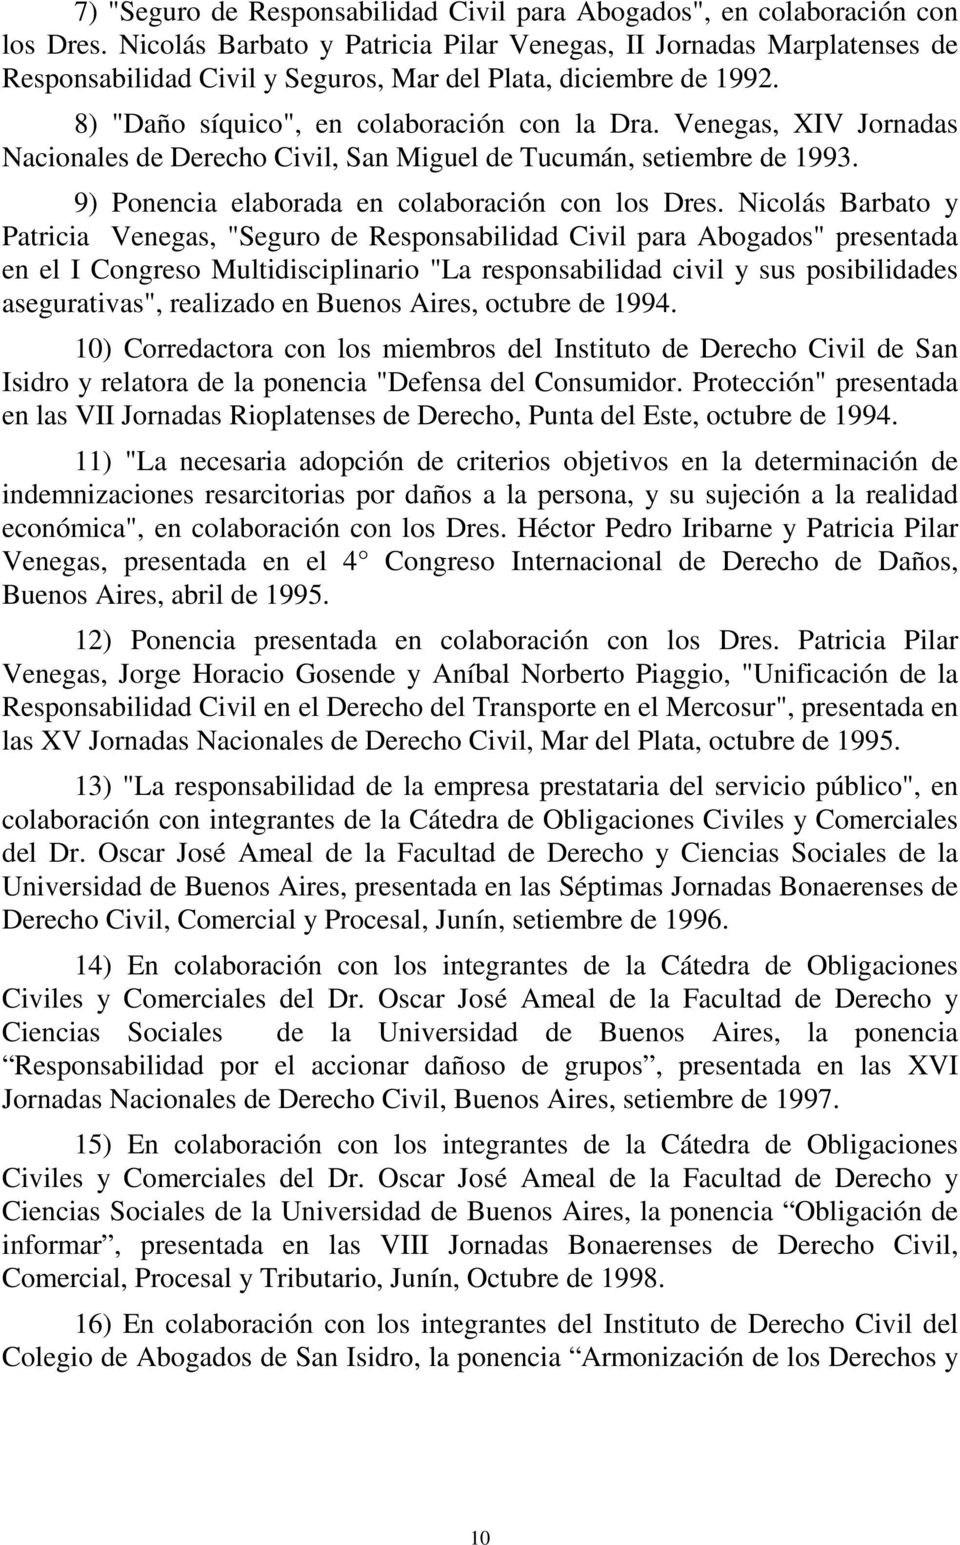 Venegas, XIV Jornadas Nacionales de Derecho Civil, San Miguel de Tucumán, setiembre de 1993. 9) Ponencia elaborada en colaboración con los Dres.